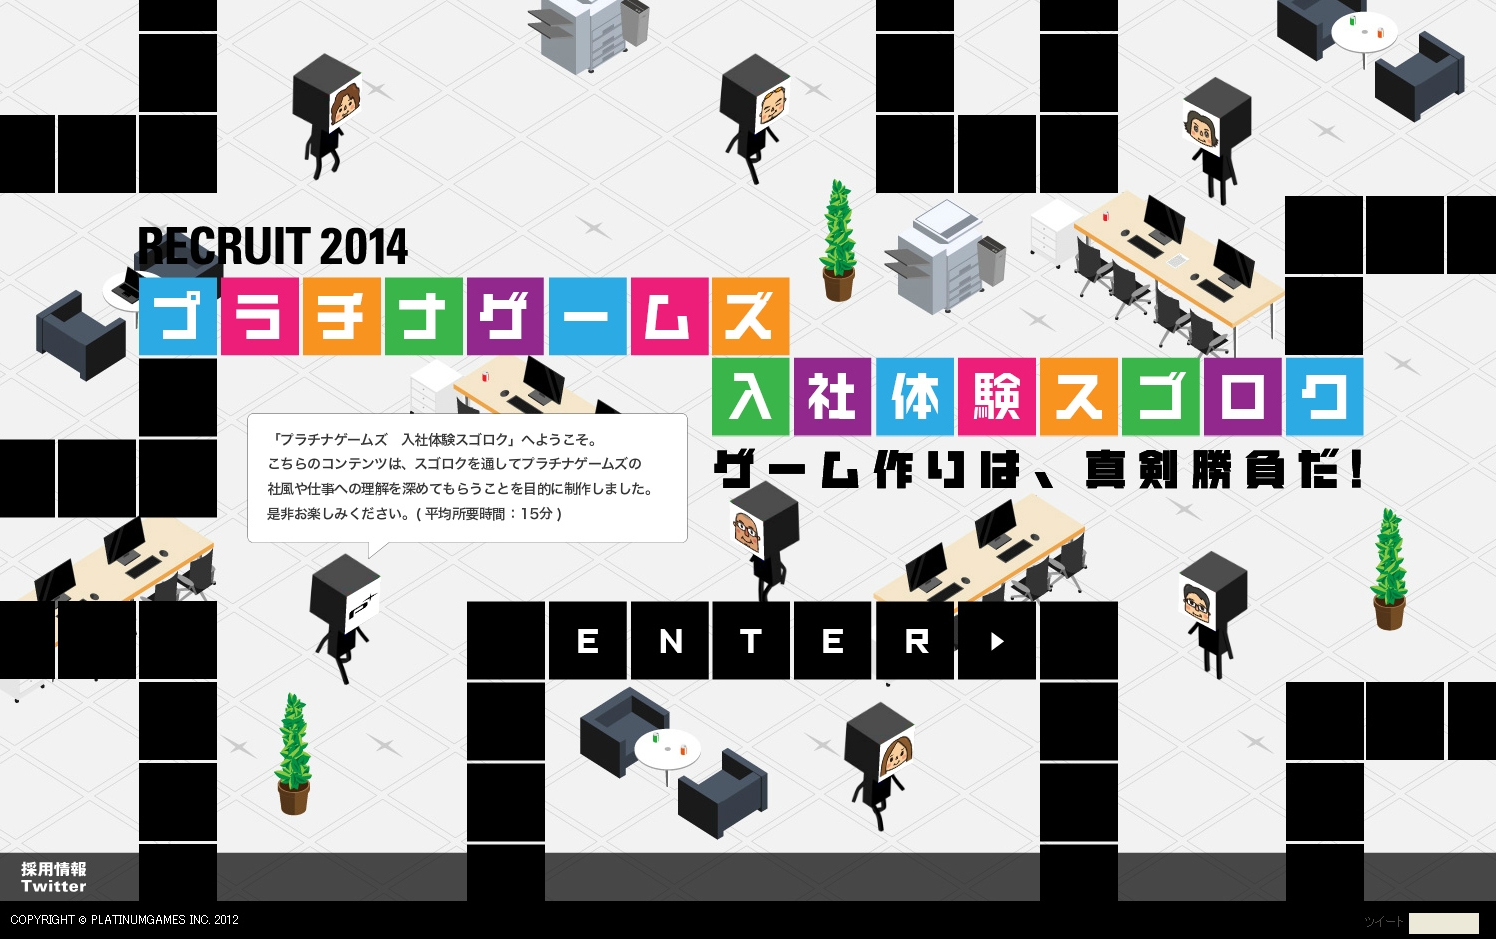 日本白金游戏2014校园招聘。提高企业文化的